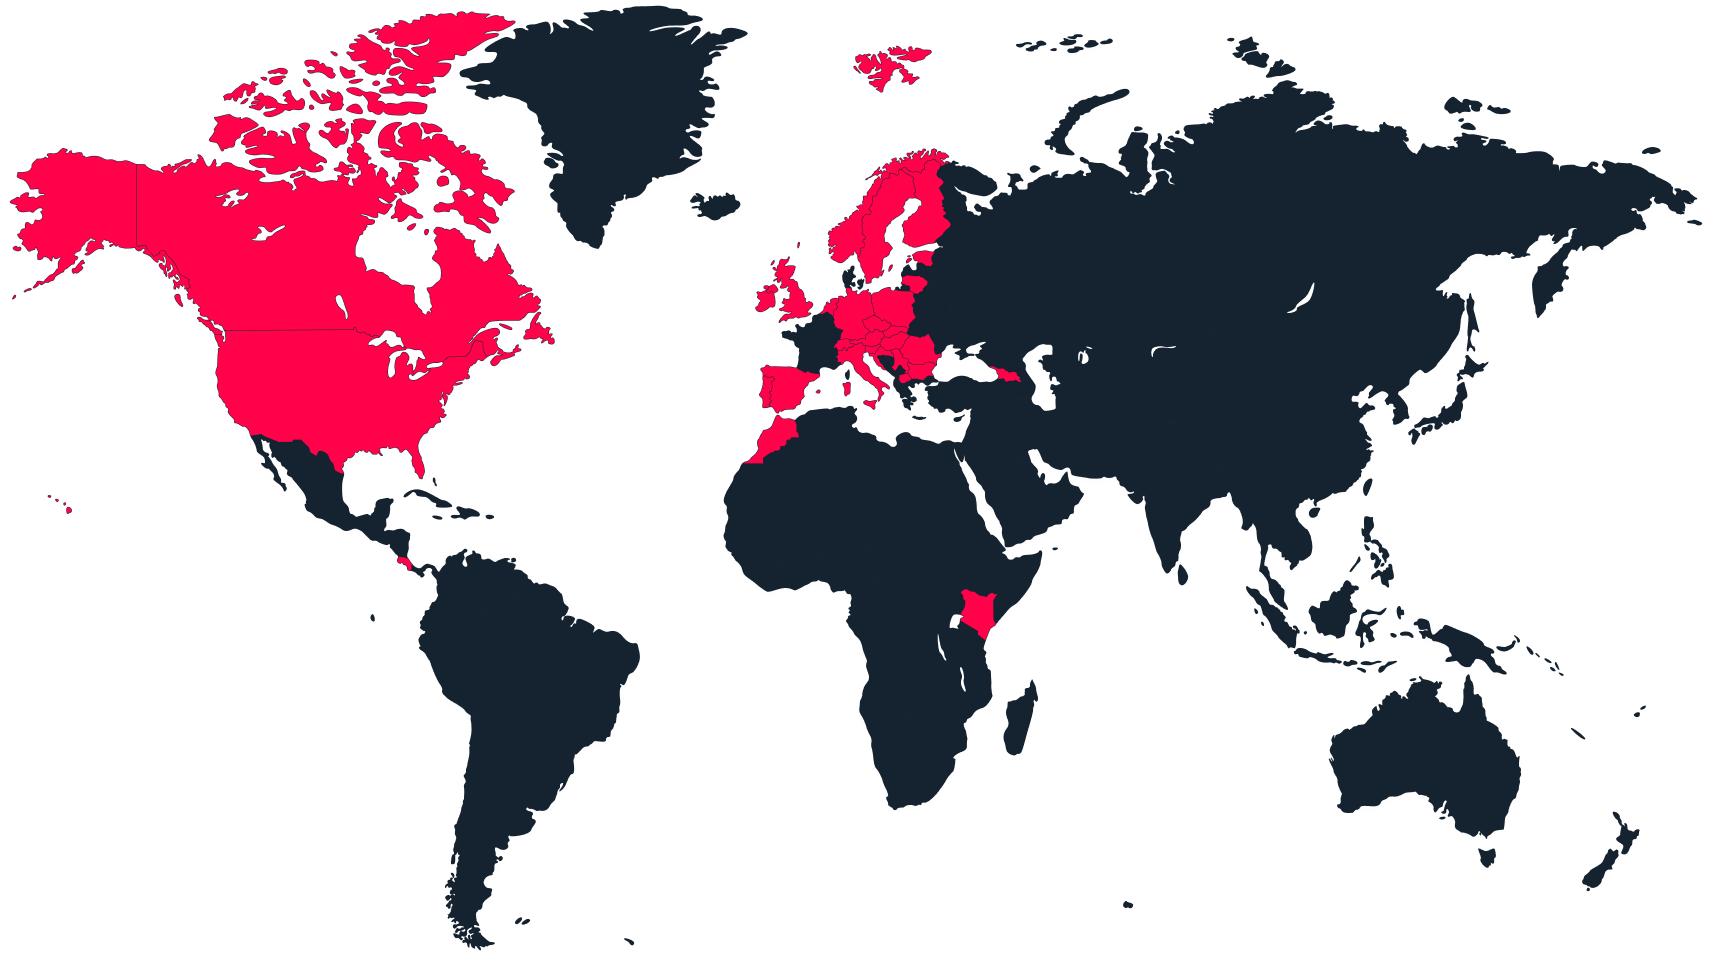 Mapa sveta s aktívnymi krajinami označenými červenou farbou